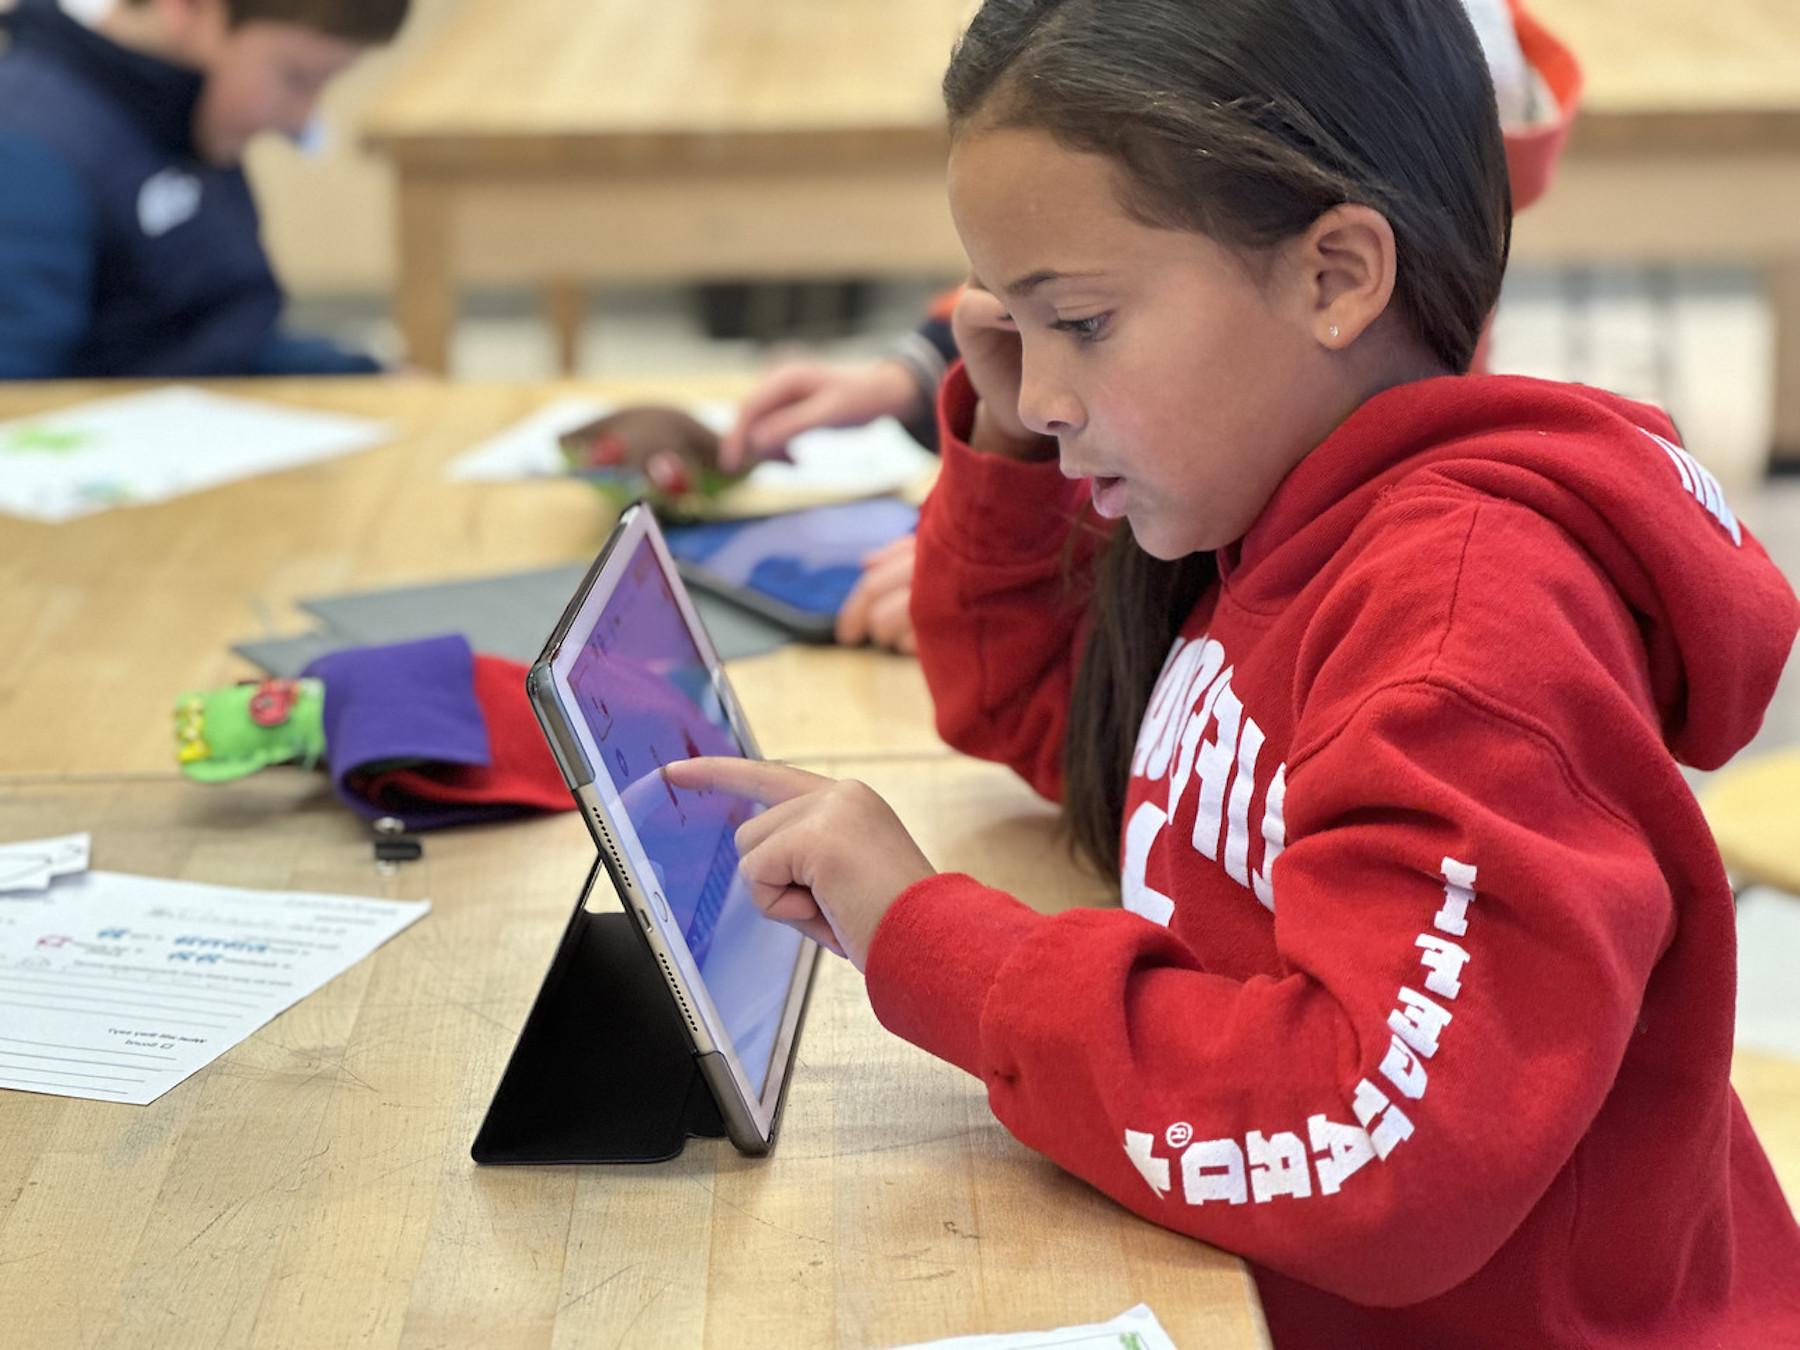 菲尔德斯顿低年级学生坐在书桌前用iPad学习.